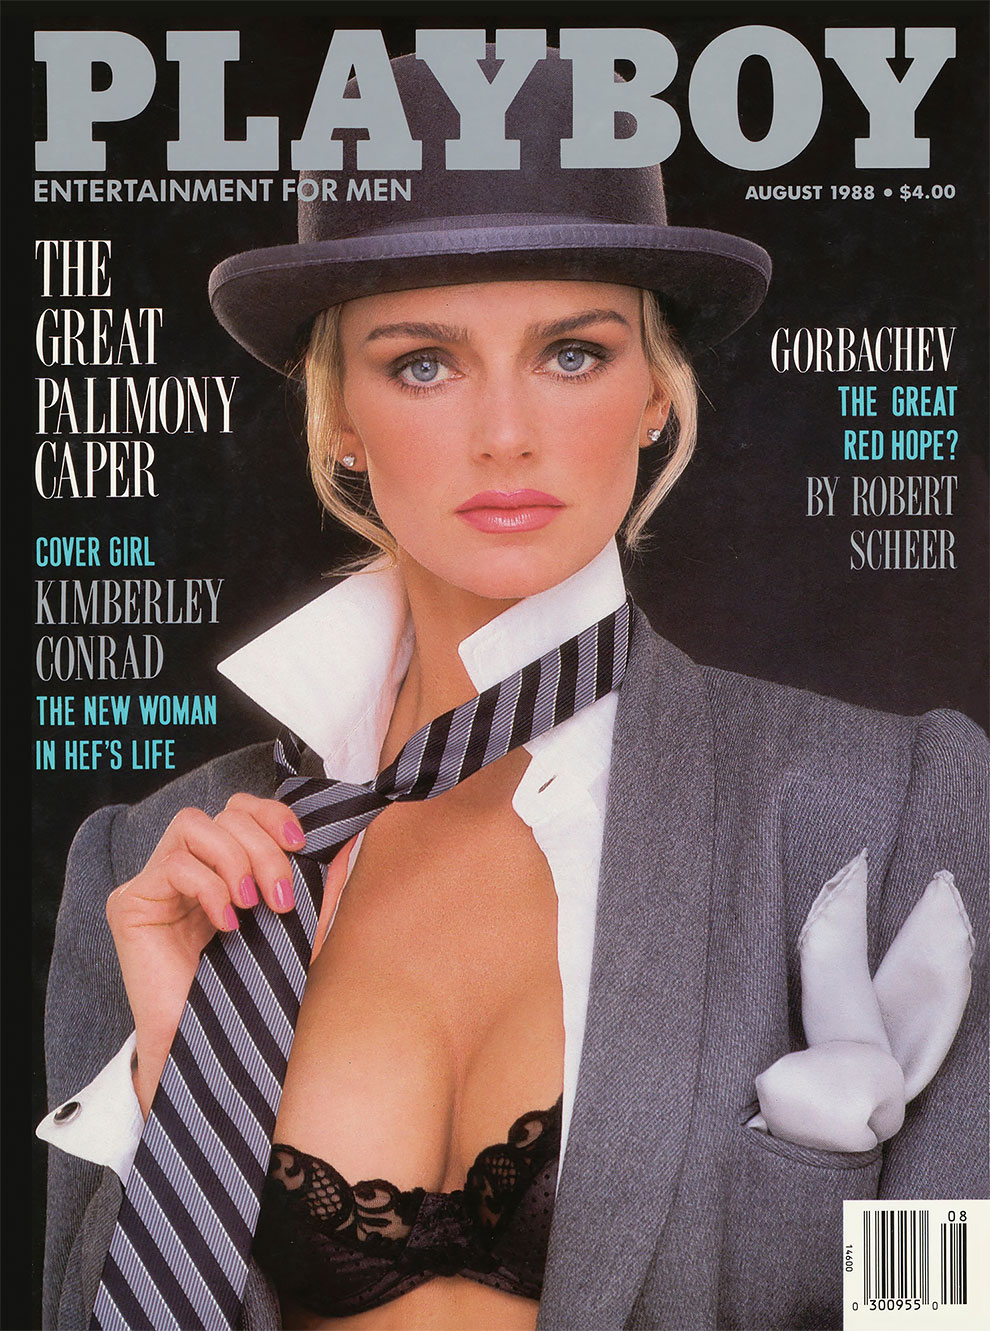 30 лет спустя: журнал Playboy воссоздал свои культовые обложки с теми же моделями 3